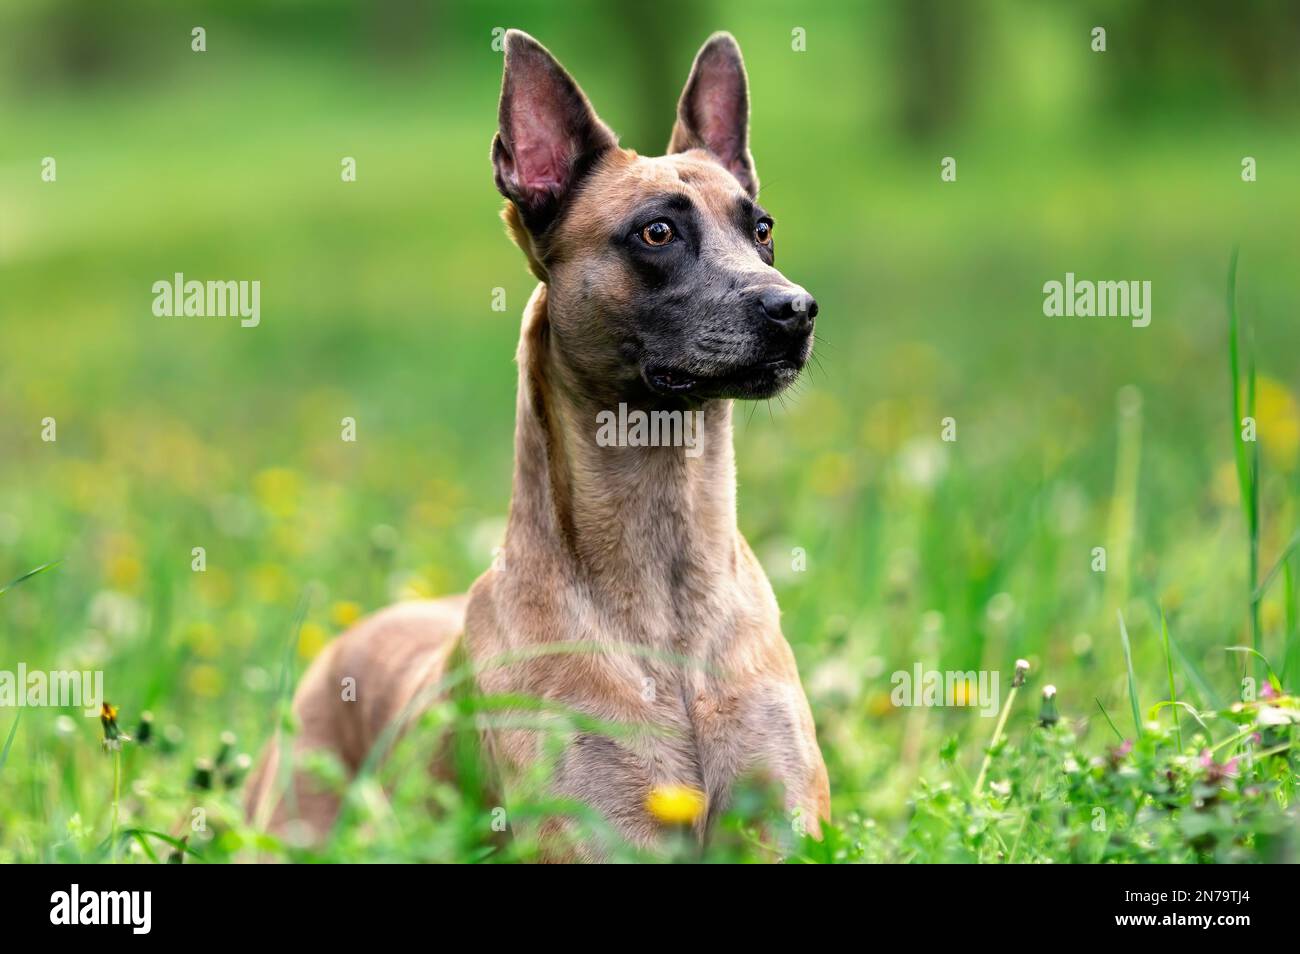 Le chien sérieux de la race des malinois belges se tient debout dans l'herbe verte en été Banque D'Images